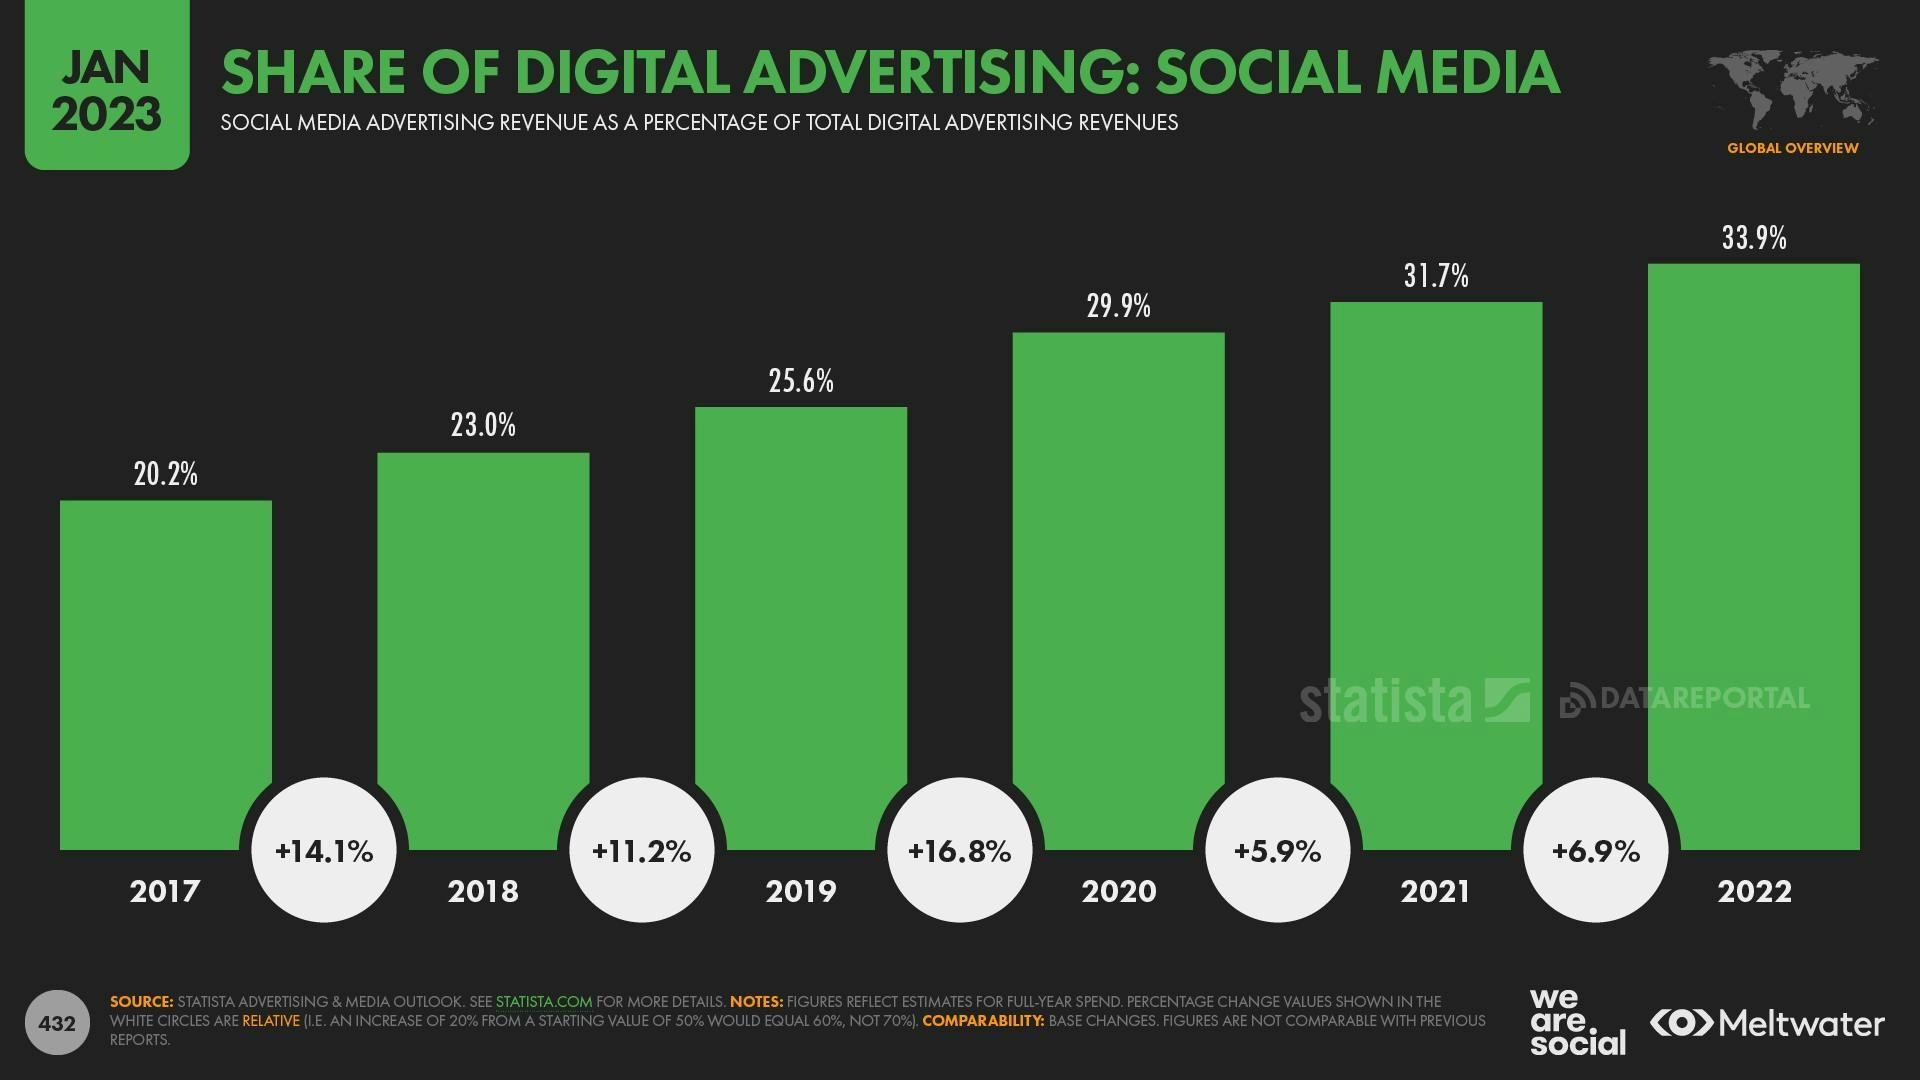 share of digital advertising: social media 2017- 2022